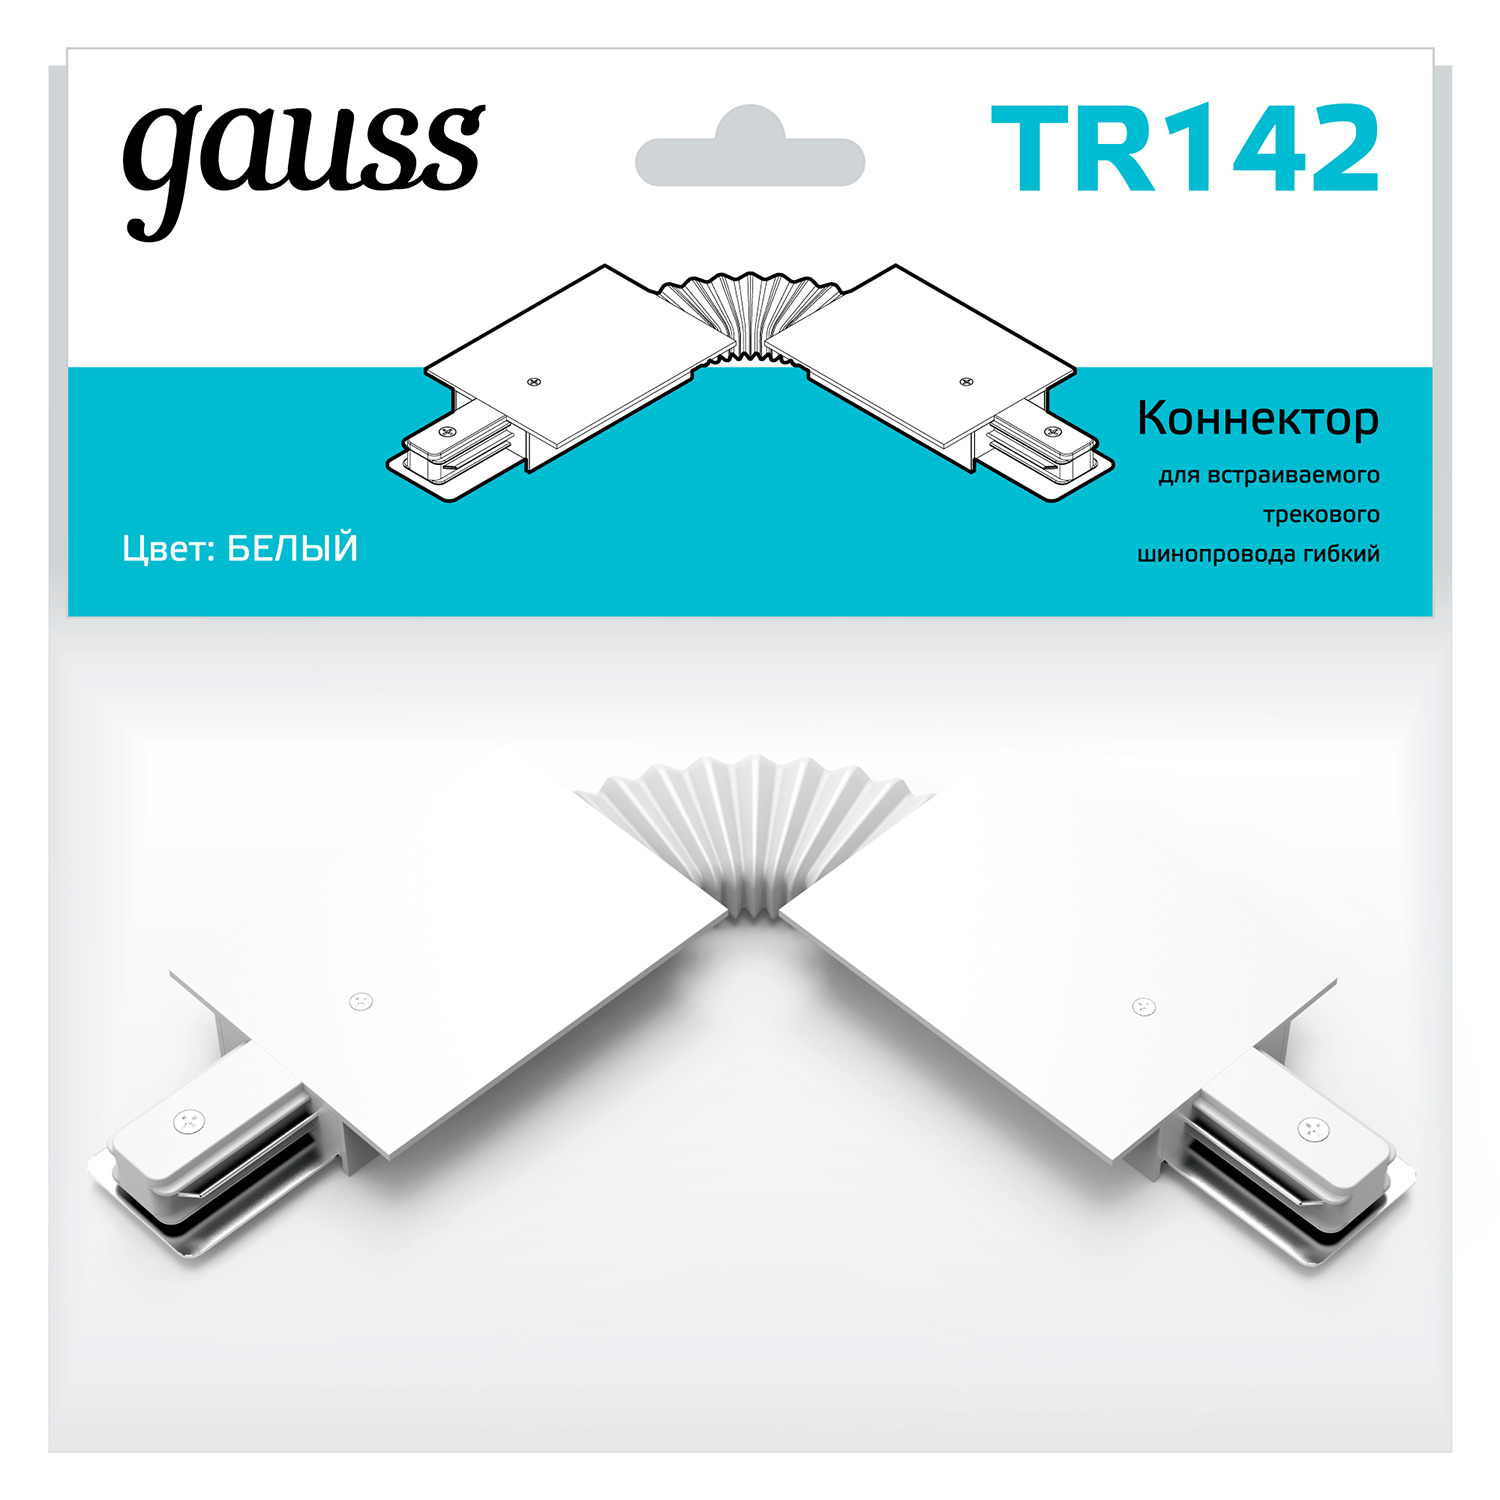 Коннектор Gauss для встраиваемых трековых шинопроводов гибкий (I) белый коннектор gauss для встраиваемых трековых шинопроводов белый